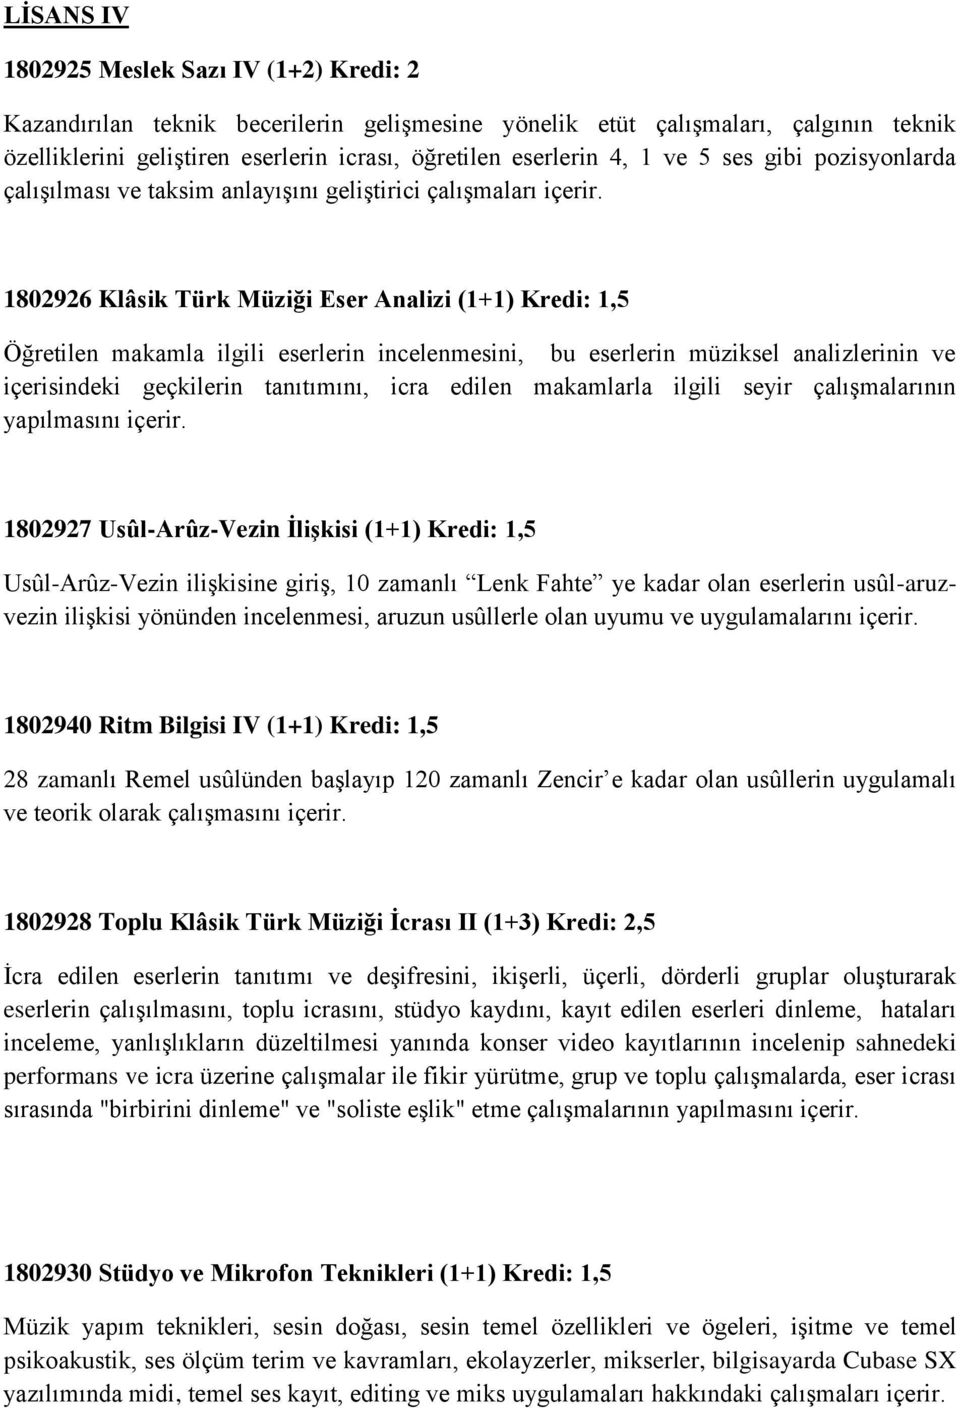 1802926 Klâsik Türk Müziği Eser Analizi (1+1) Kredi: 1,5 Öğretilen makamla ilgili eserlerin incelenmesini, bu eserlerin müziksel analizlerinin ve içerisindeki geçkilerin tanıtımını, icra edilen